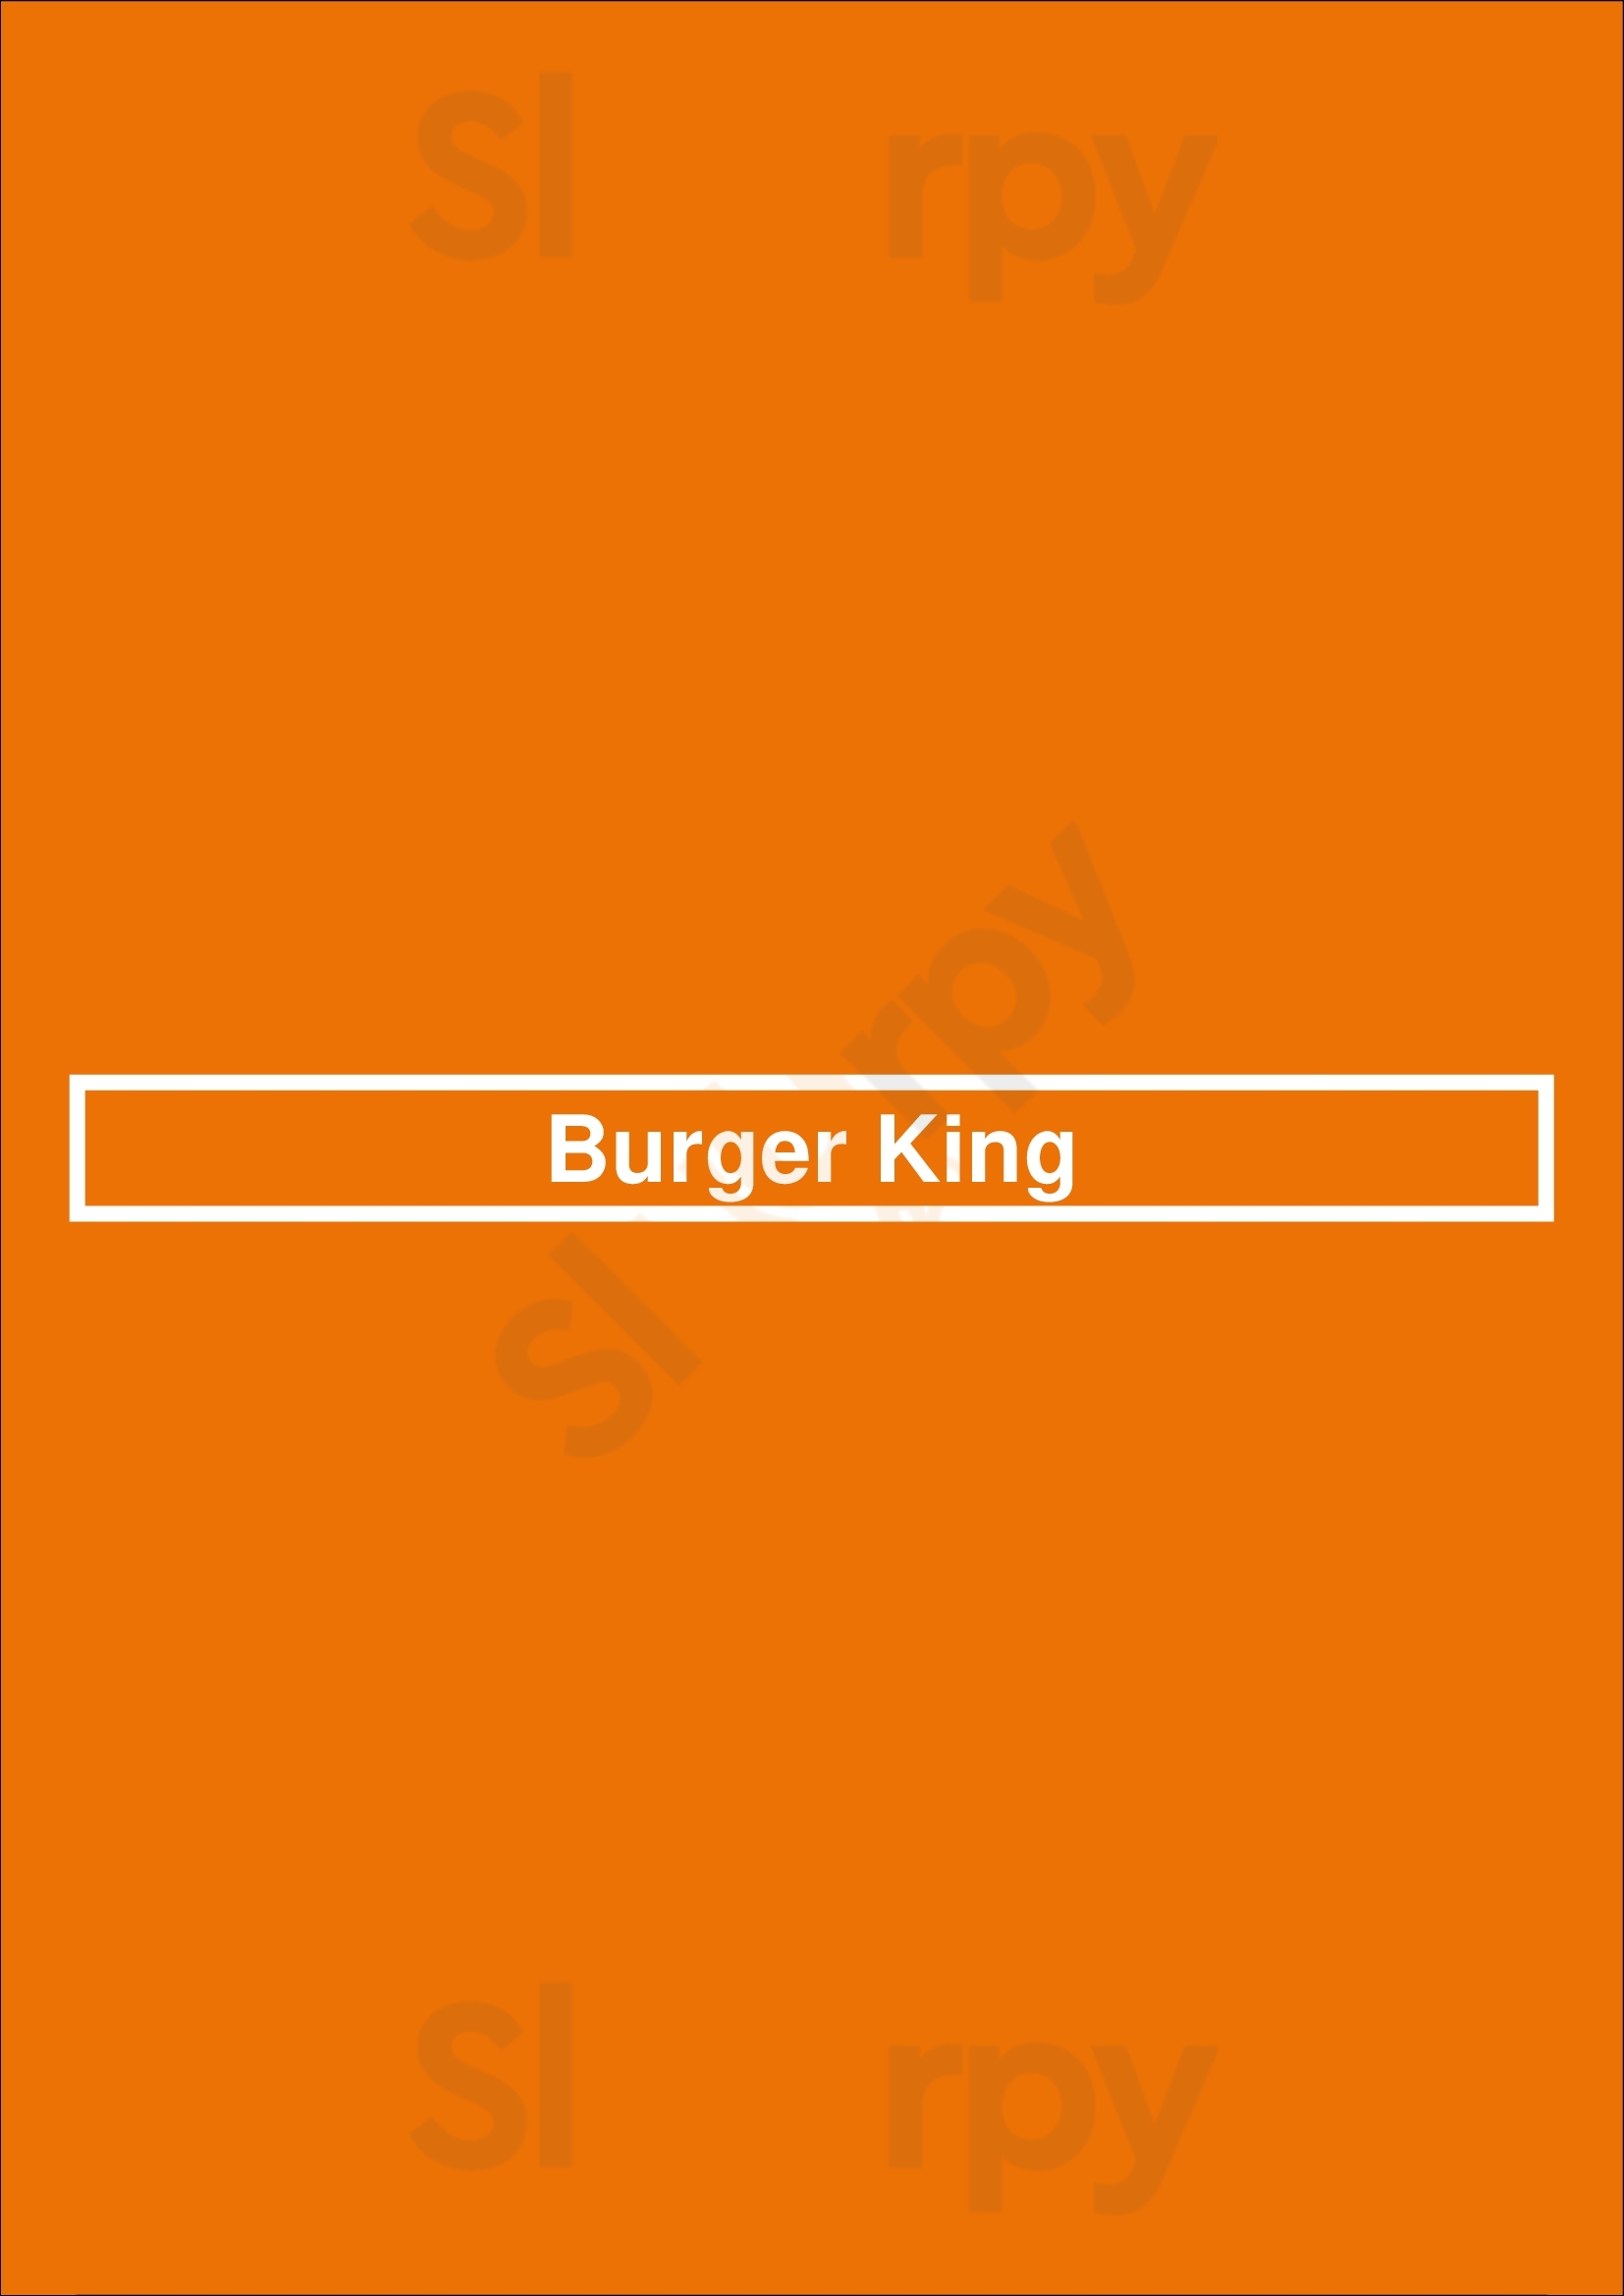 Burger King Houston Menu - 1